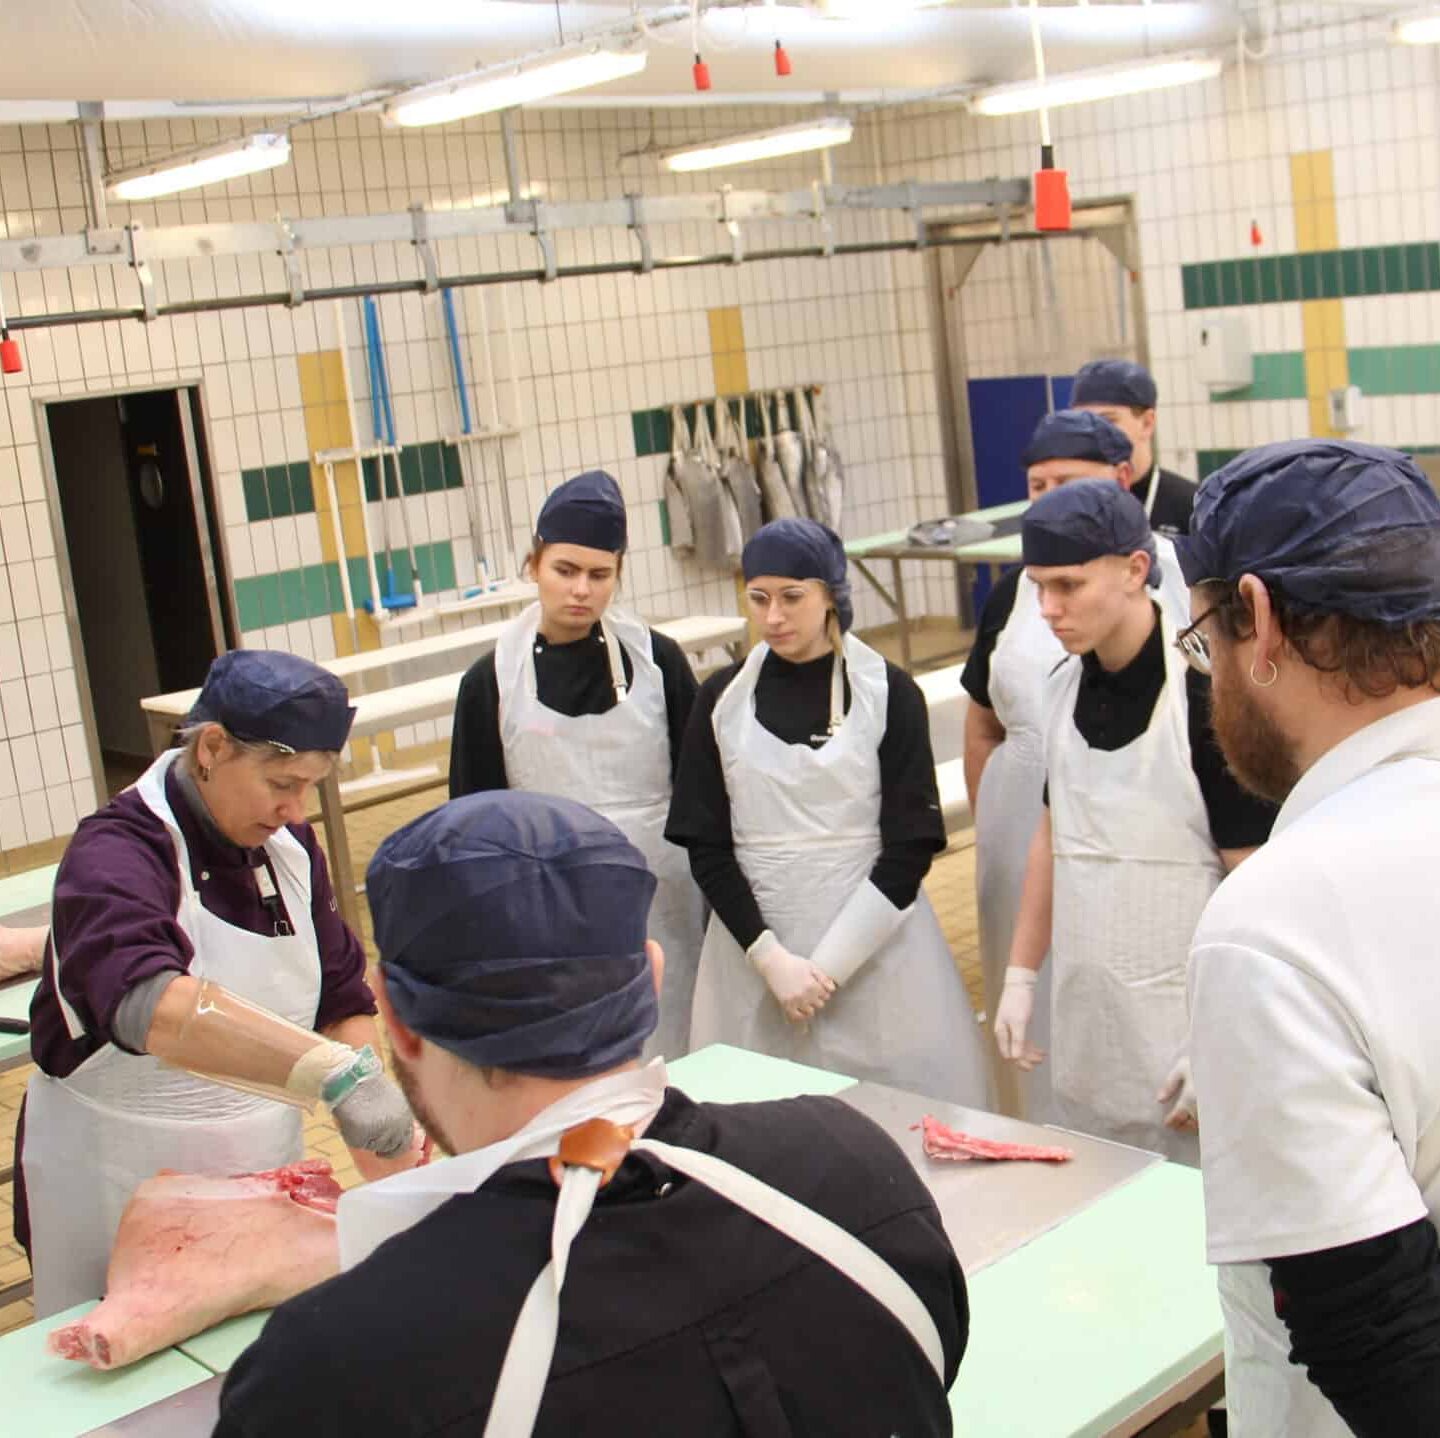 Slagterunderviser vise hvordan man skære kød ud, foran hele klassen